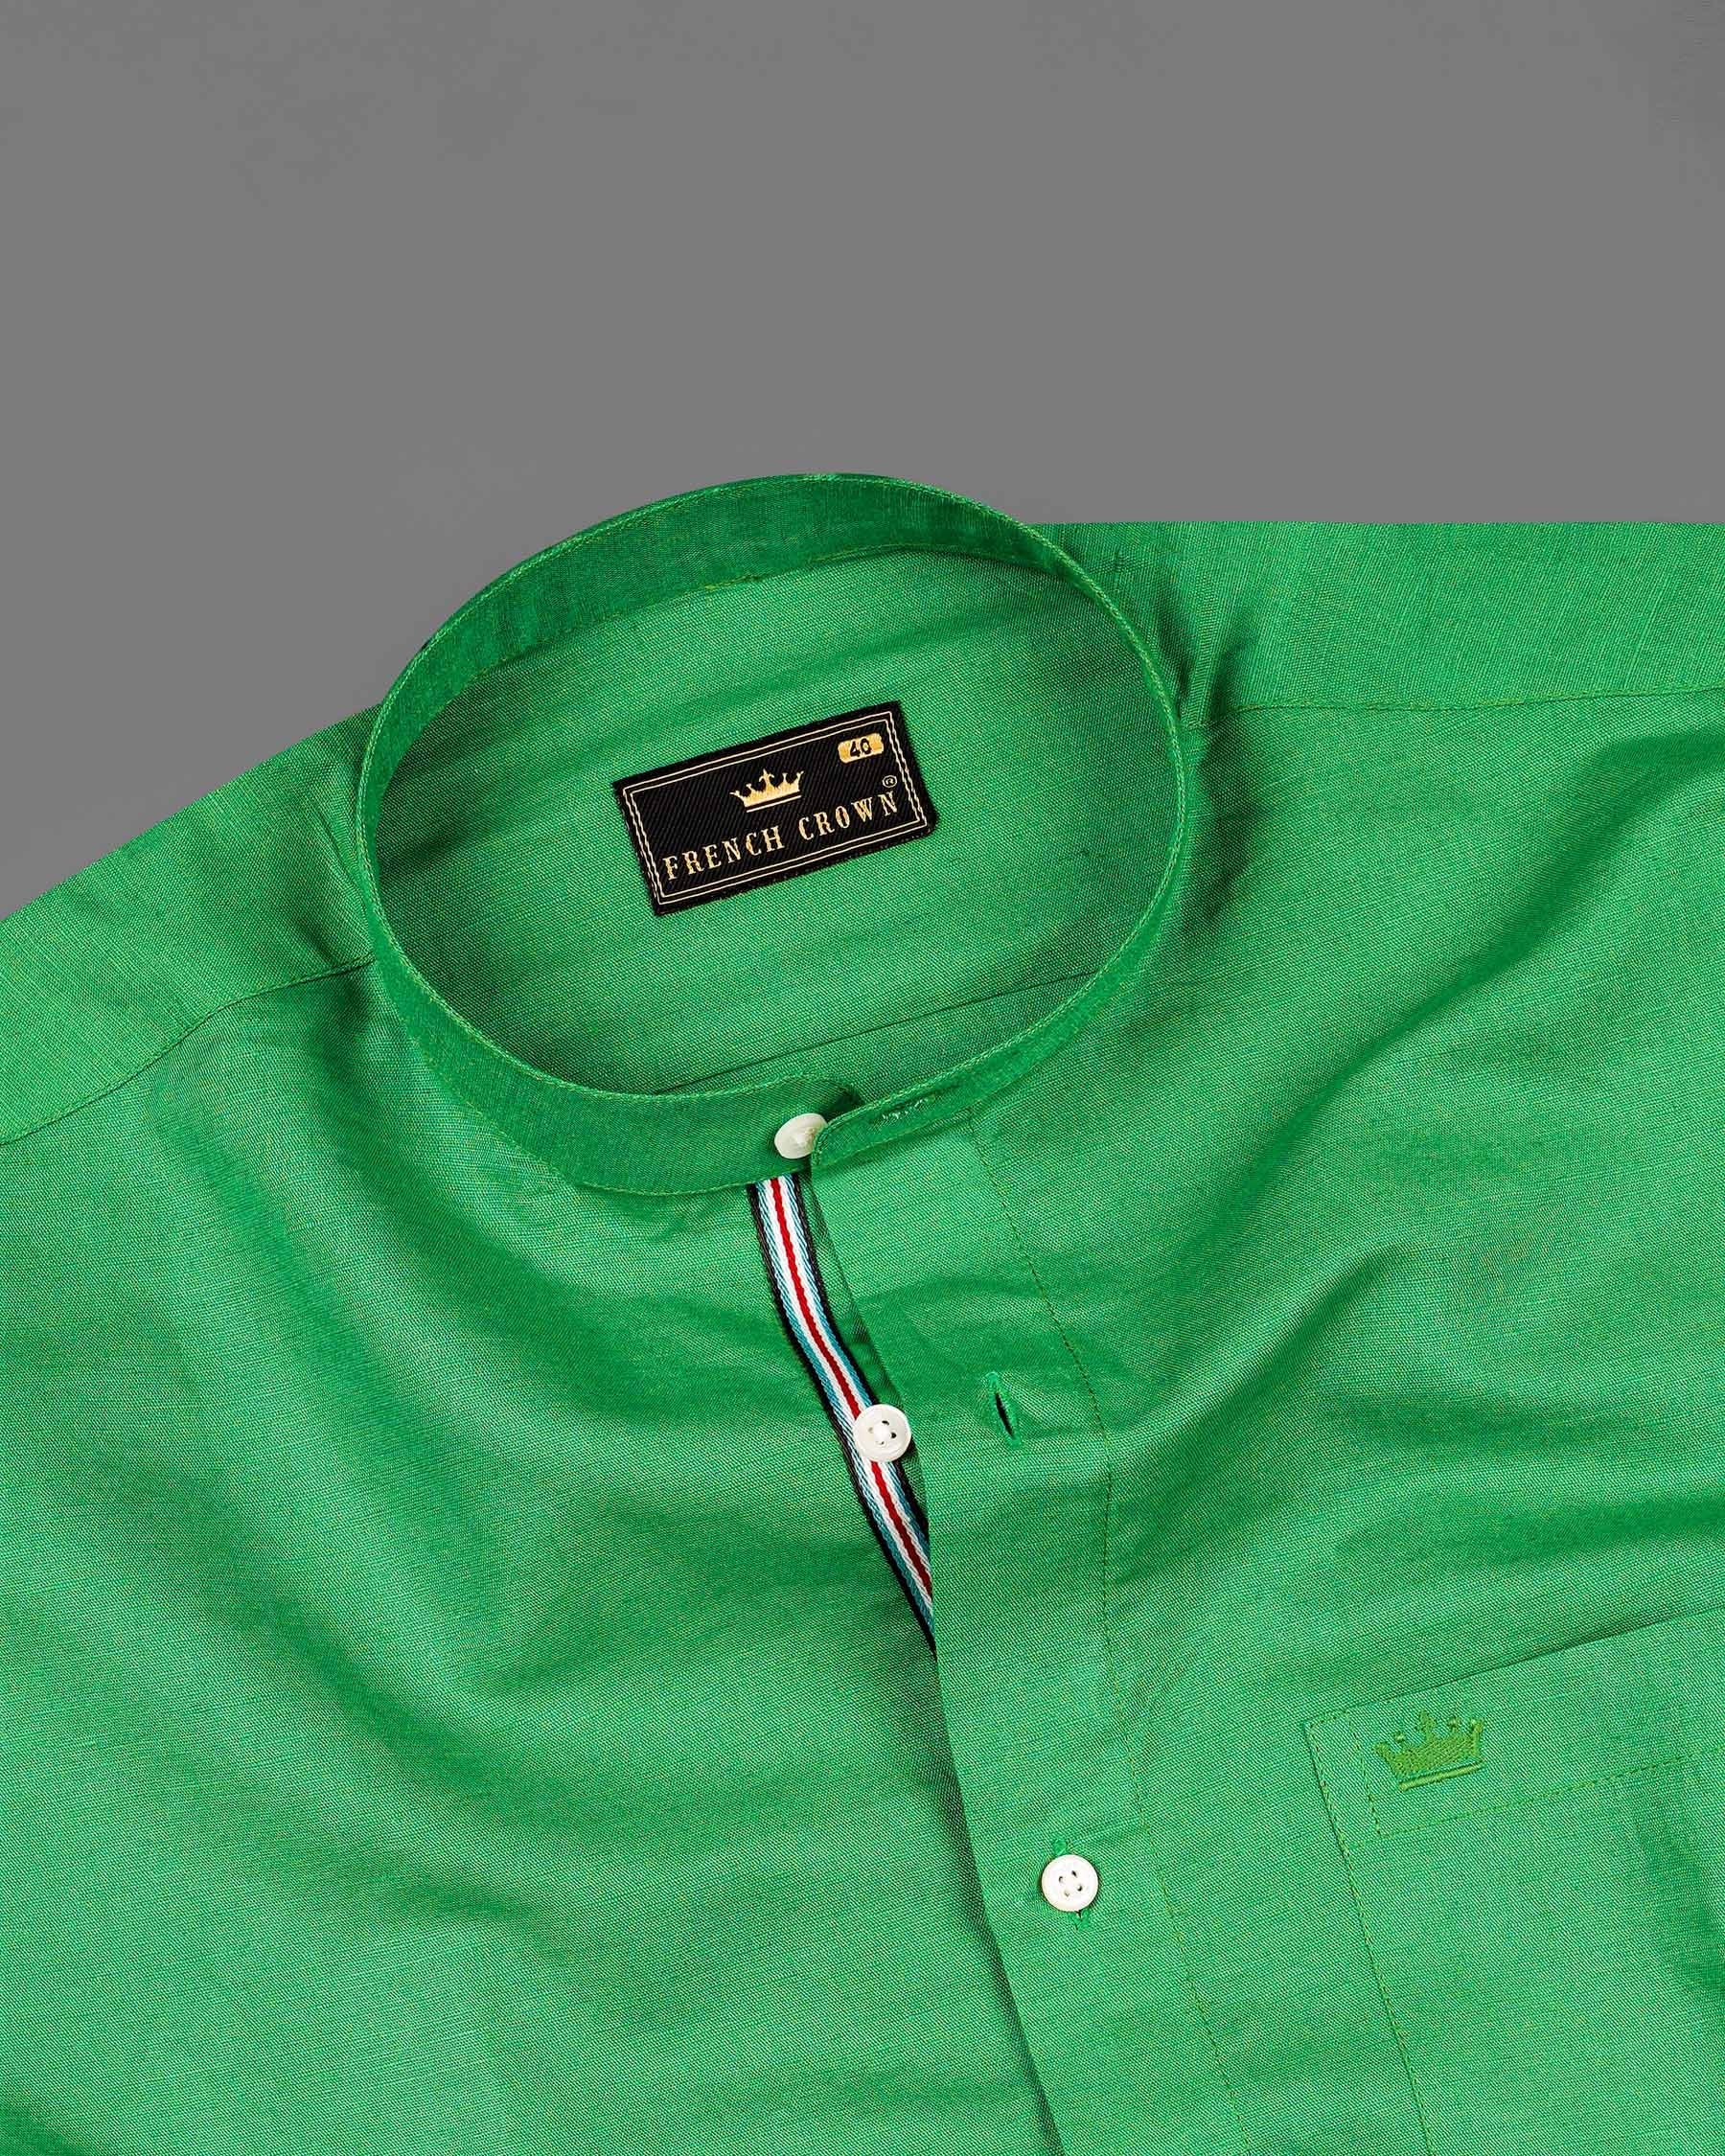 Salem Green Luxurious Linen Mandarin Collar Shirt 7944-M-P-38,7944-M-P-H-38,7944-M-P-39,7944-M-P-H-39,7944-M-P-40,7944-M-P-H-40,7944-M-P-42,7944-M-P-H-42,7944-M-P-44,7944-M-P-H-44,7944-M-P-46,7944-M-P-H-46,7944-M-P-48,7944-M-P-H-48,7944-M-P-50,7944-M-P-H-50,7944-M-P-52,7944-M-P-H-52